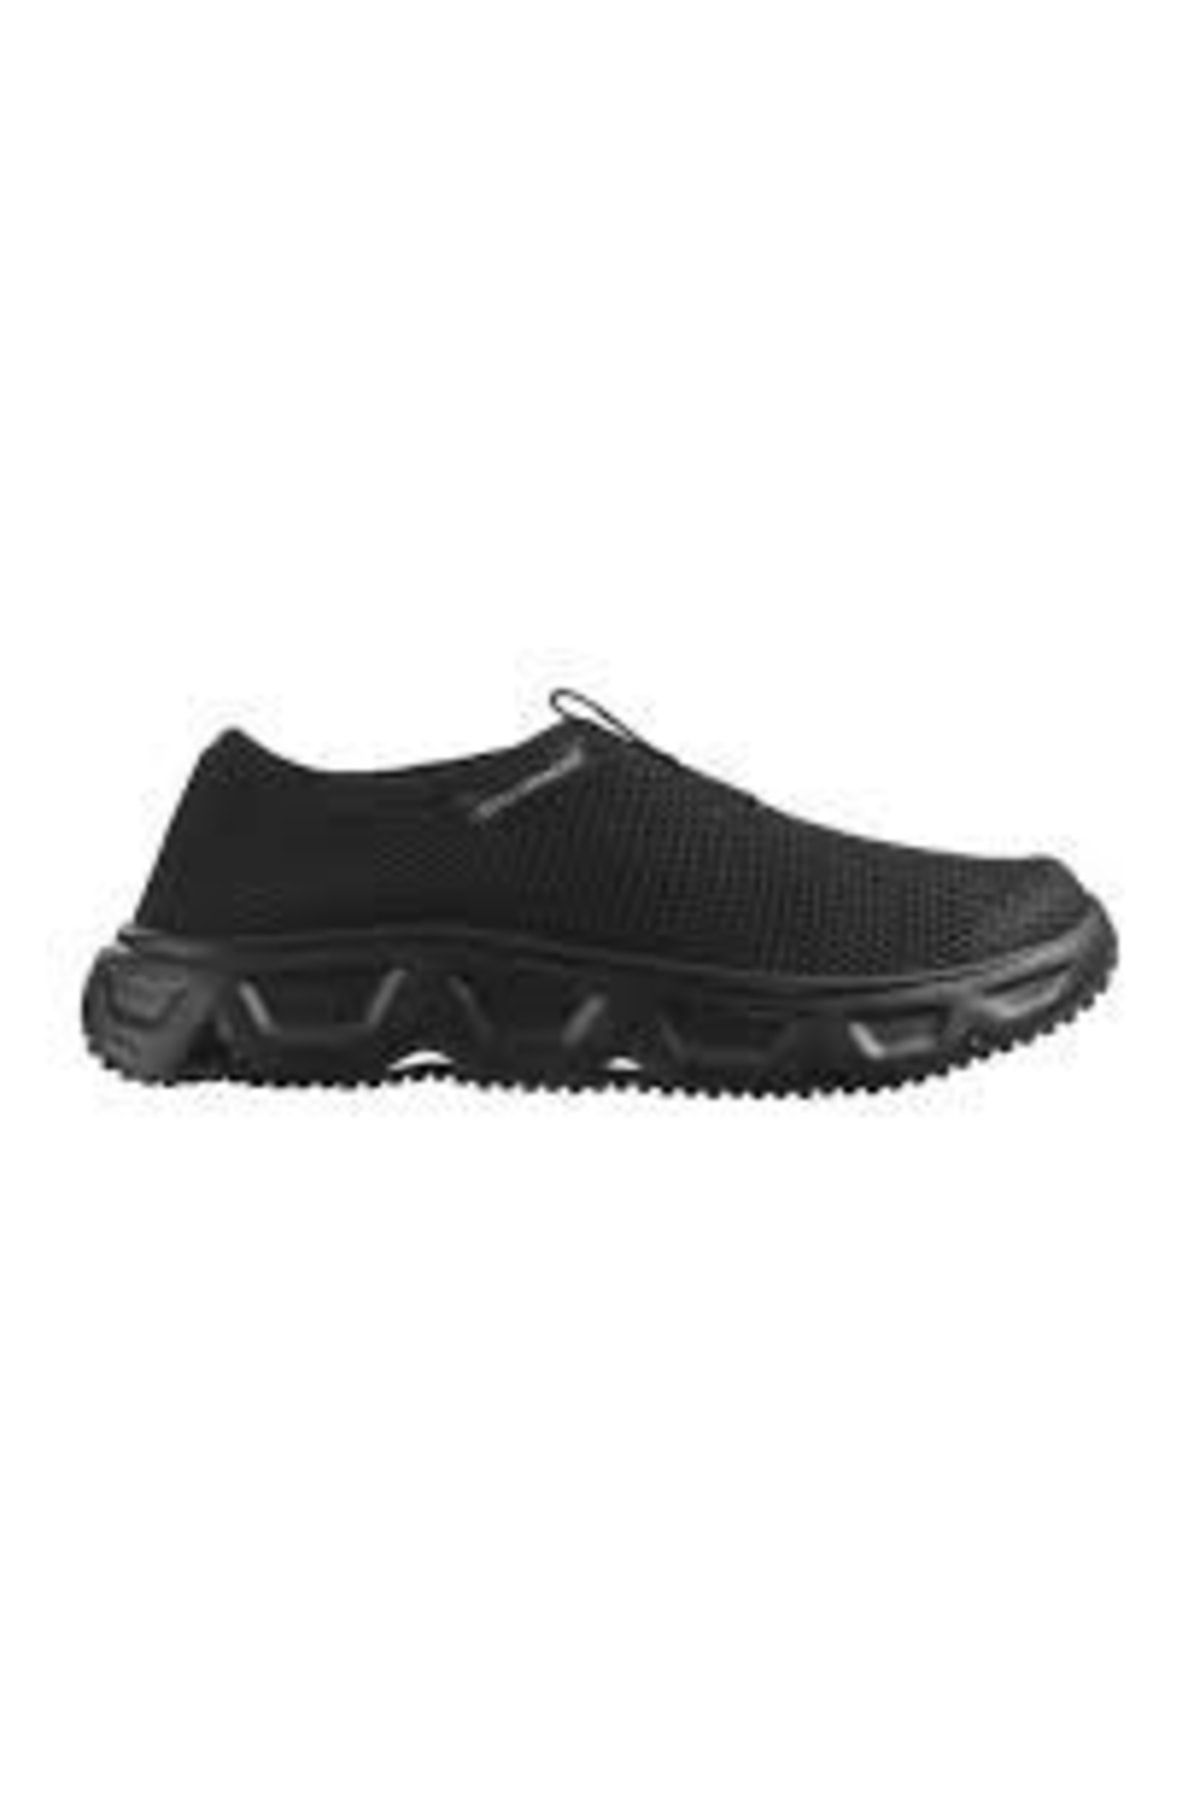 Salomon Reelax Moc 6.0 Kadın Outdoor Ayakkabı Siyah L47111800